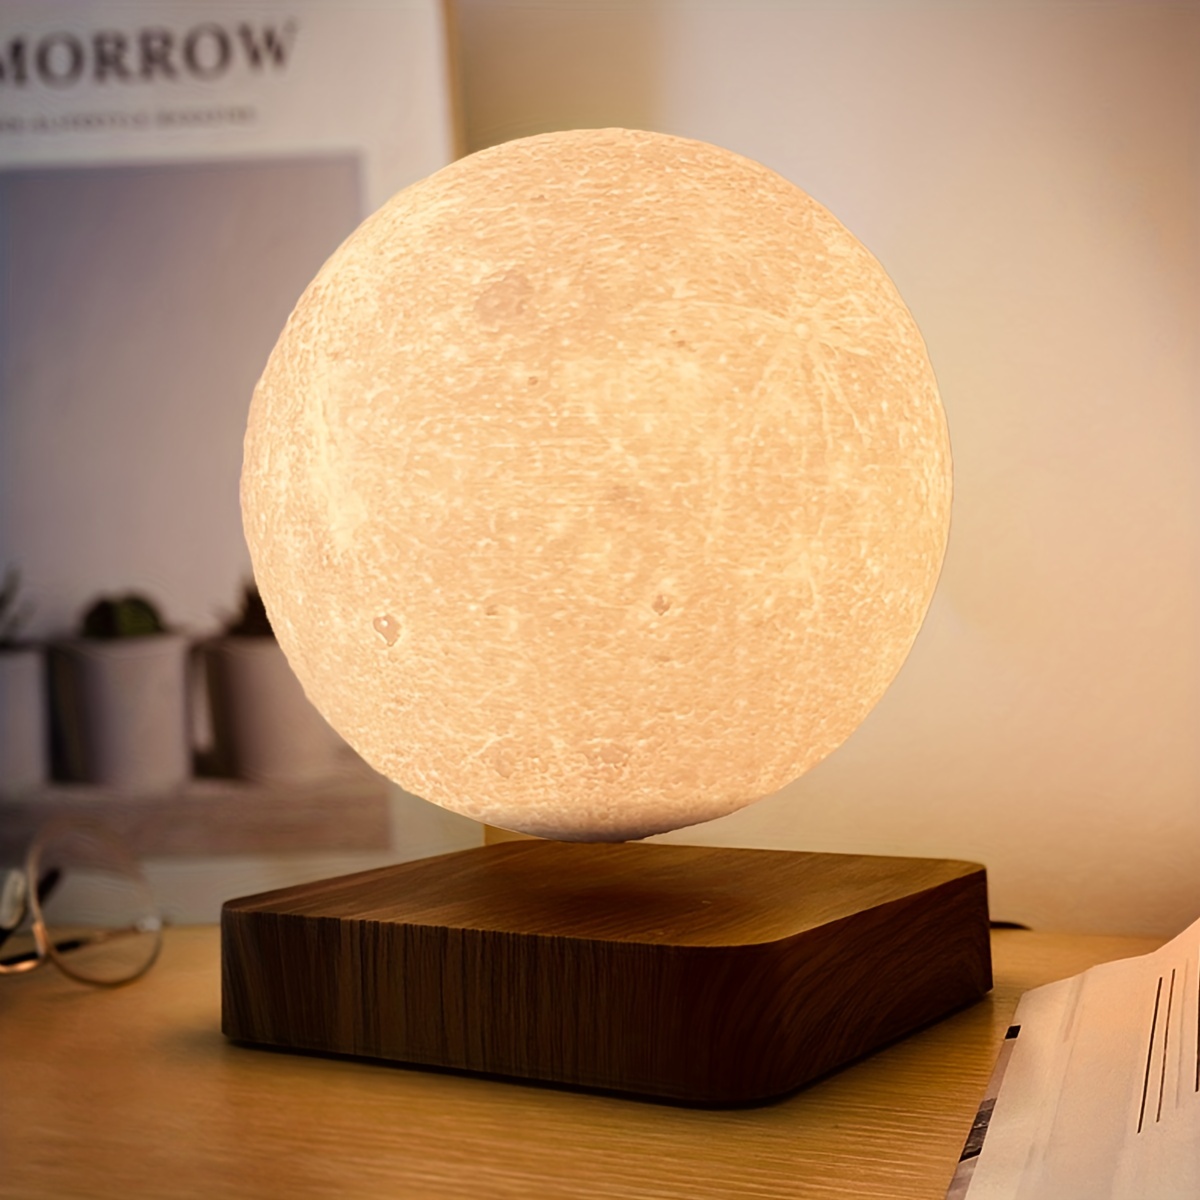 Lámpara luna 3D Te regalo la Luna - Tienda online Curolletes